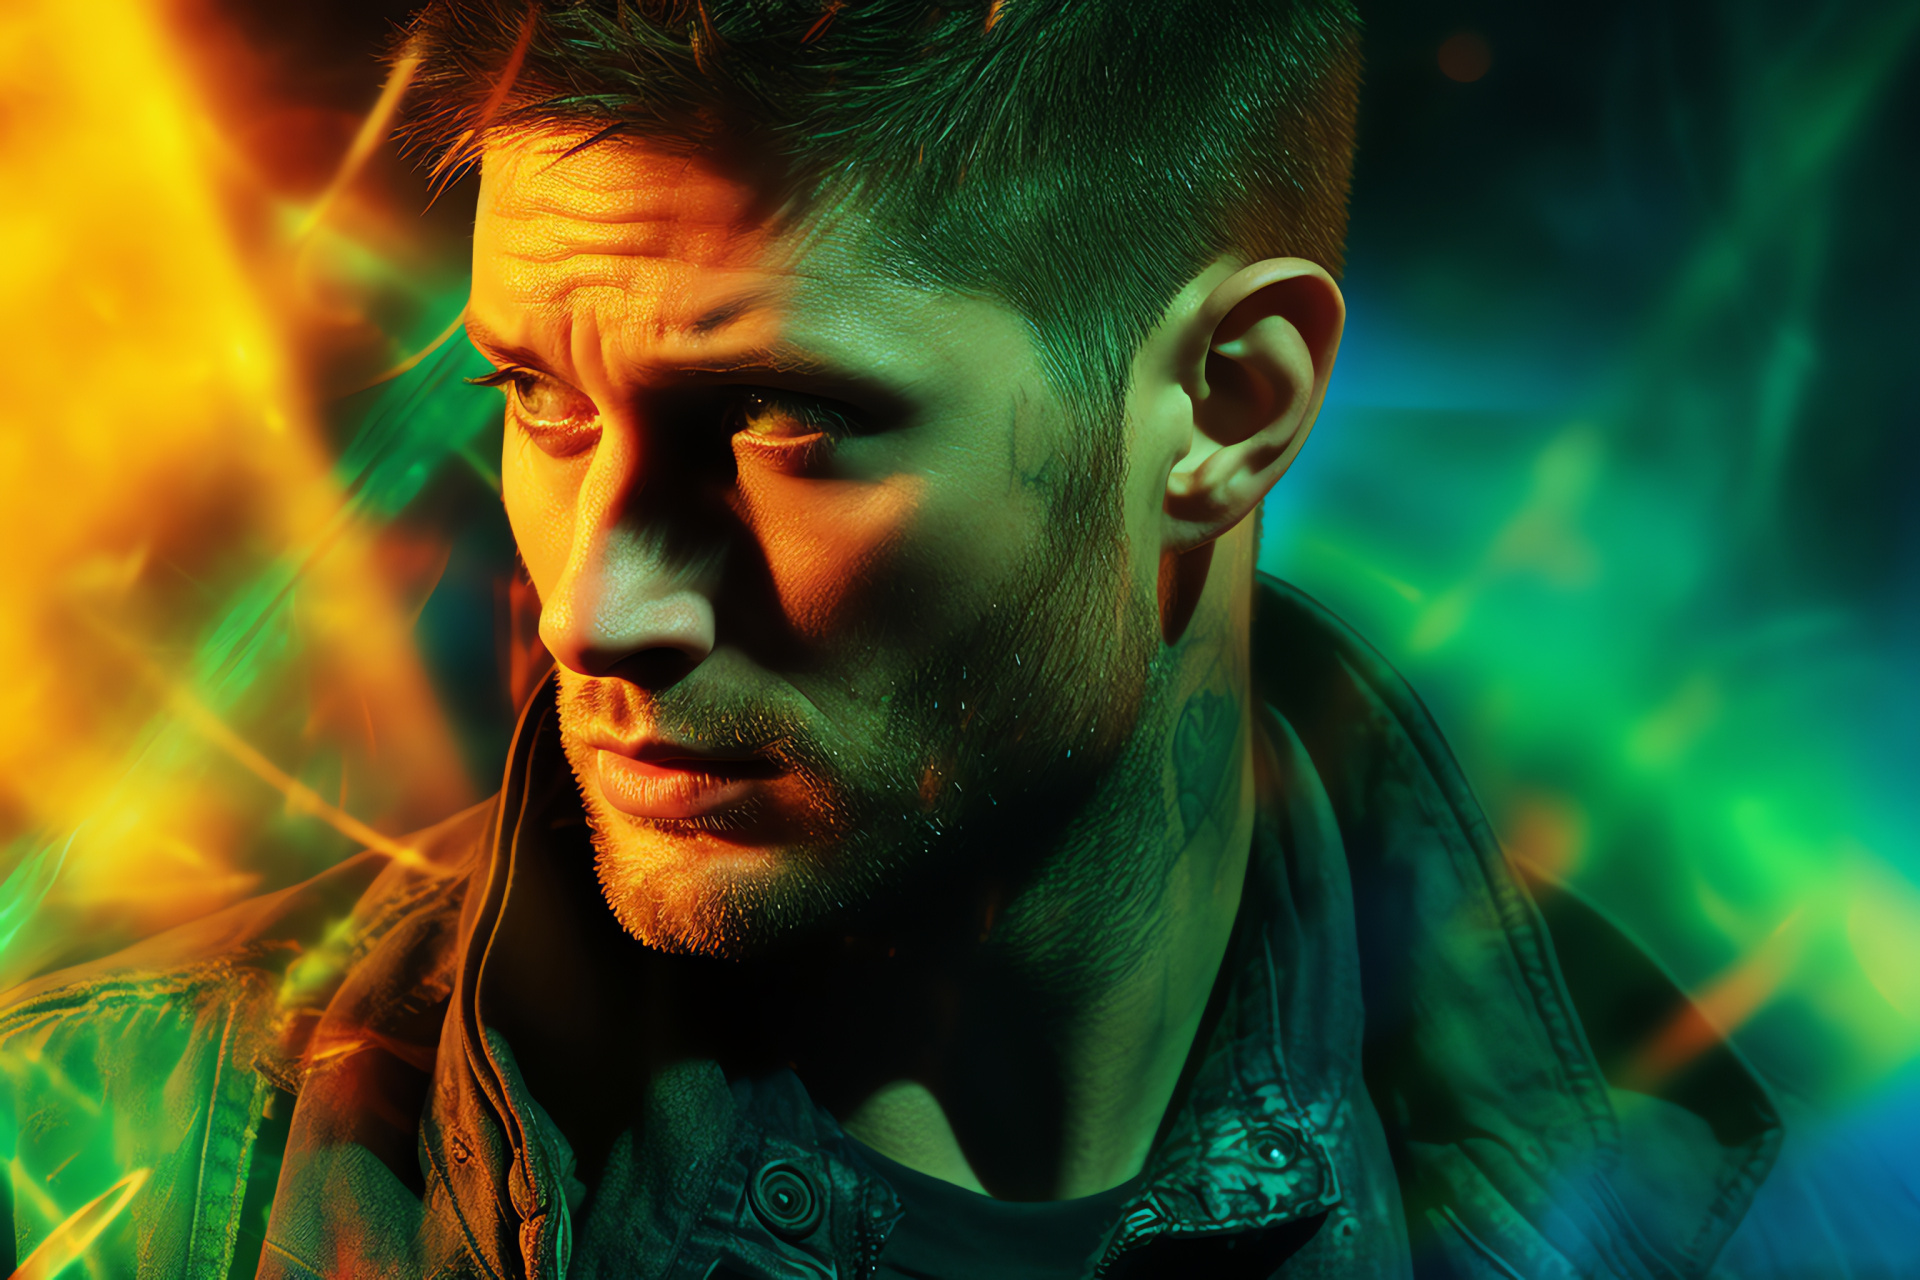 Dean Winchester Supernatural, hunter's intensity, spectral dynamic, broken image effect, Ackles portrayal, HD Desktop Image